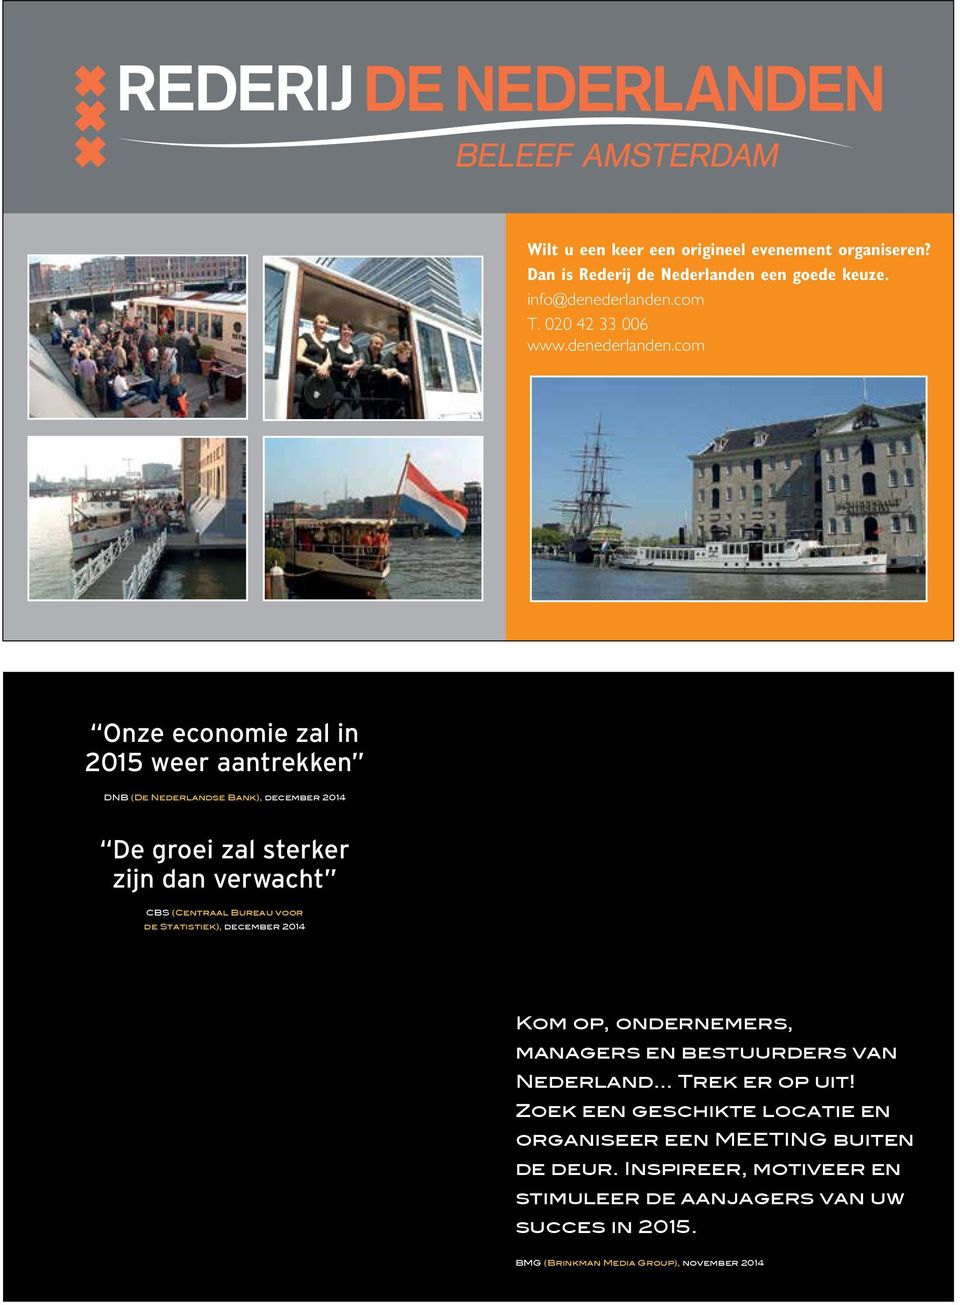 Statistiek), december 2014 Kom op, ondernemers, managers en bestuurders van Nederland Trek er op uit! Zoek een geschikte locatie en organiseer een MEETING buiten de deur.